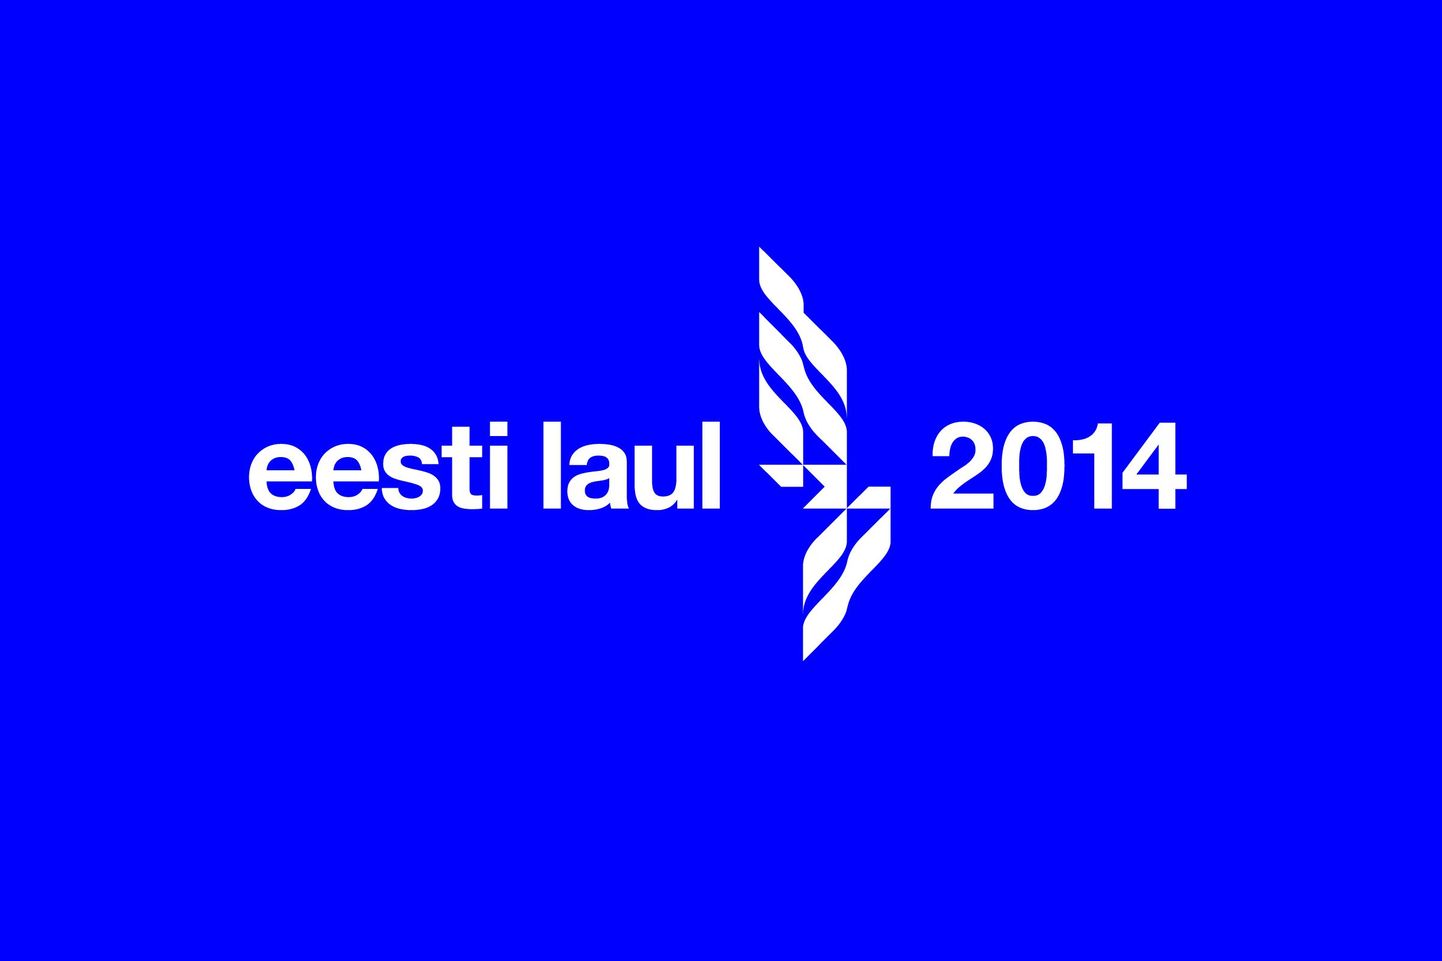 Eesti Laul 2014